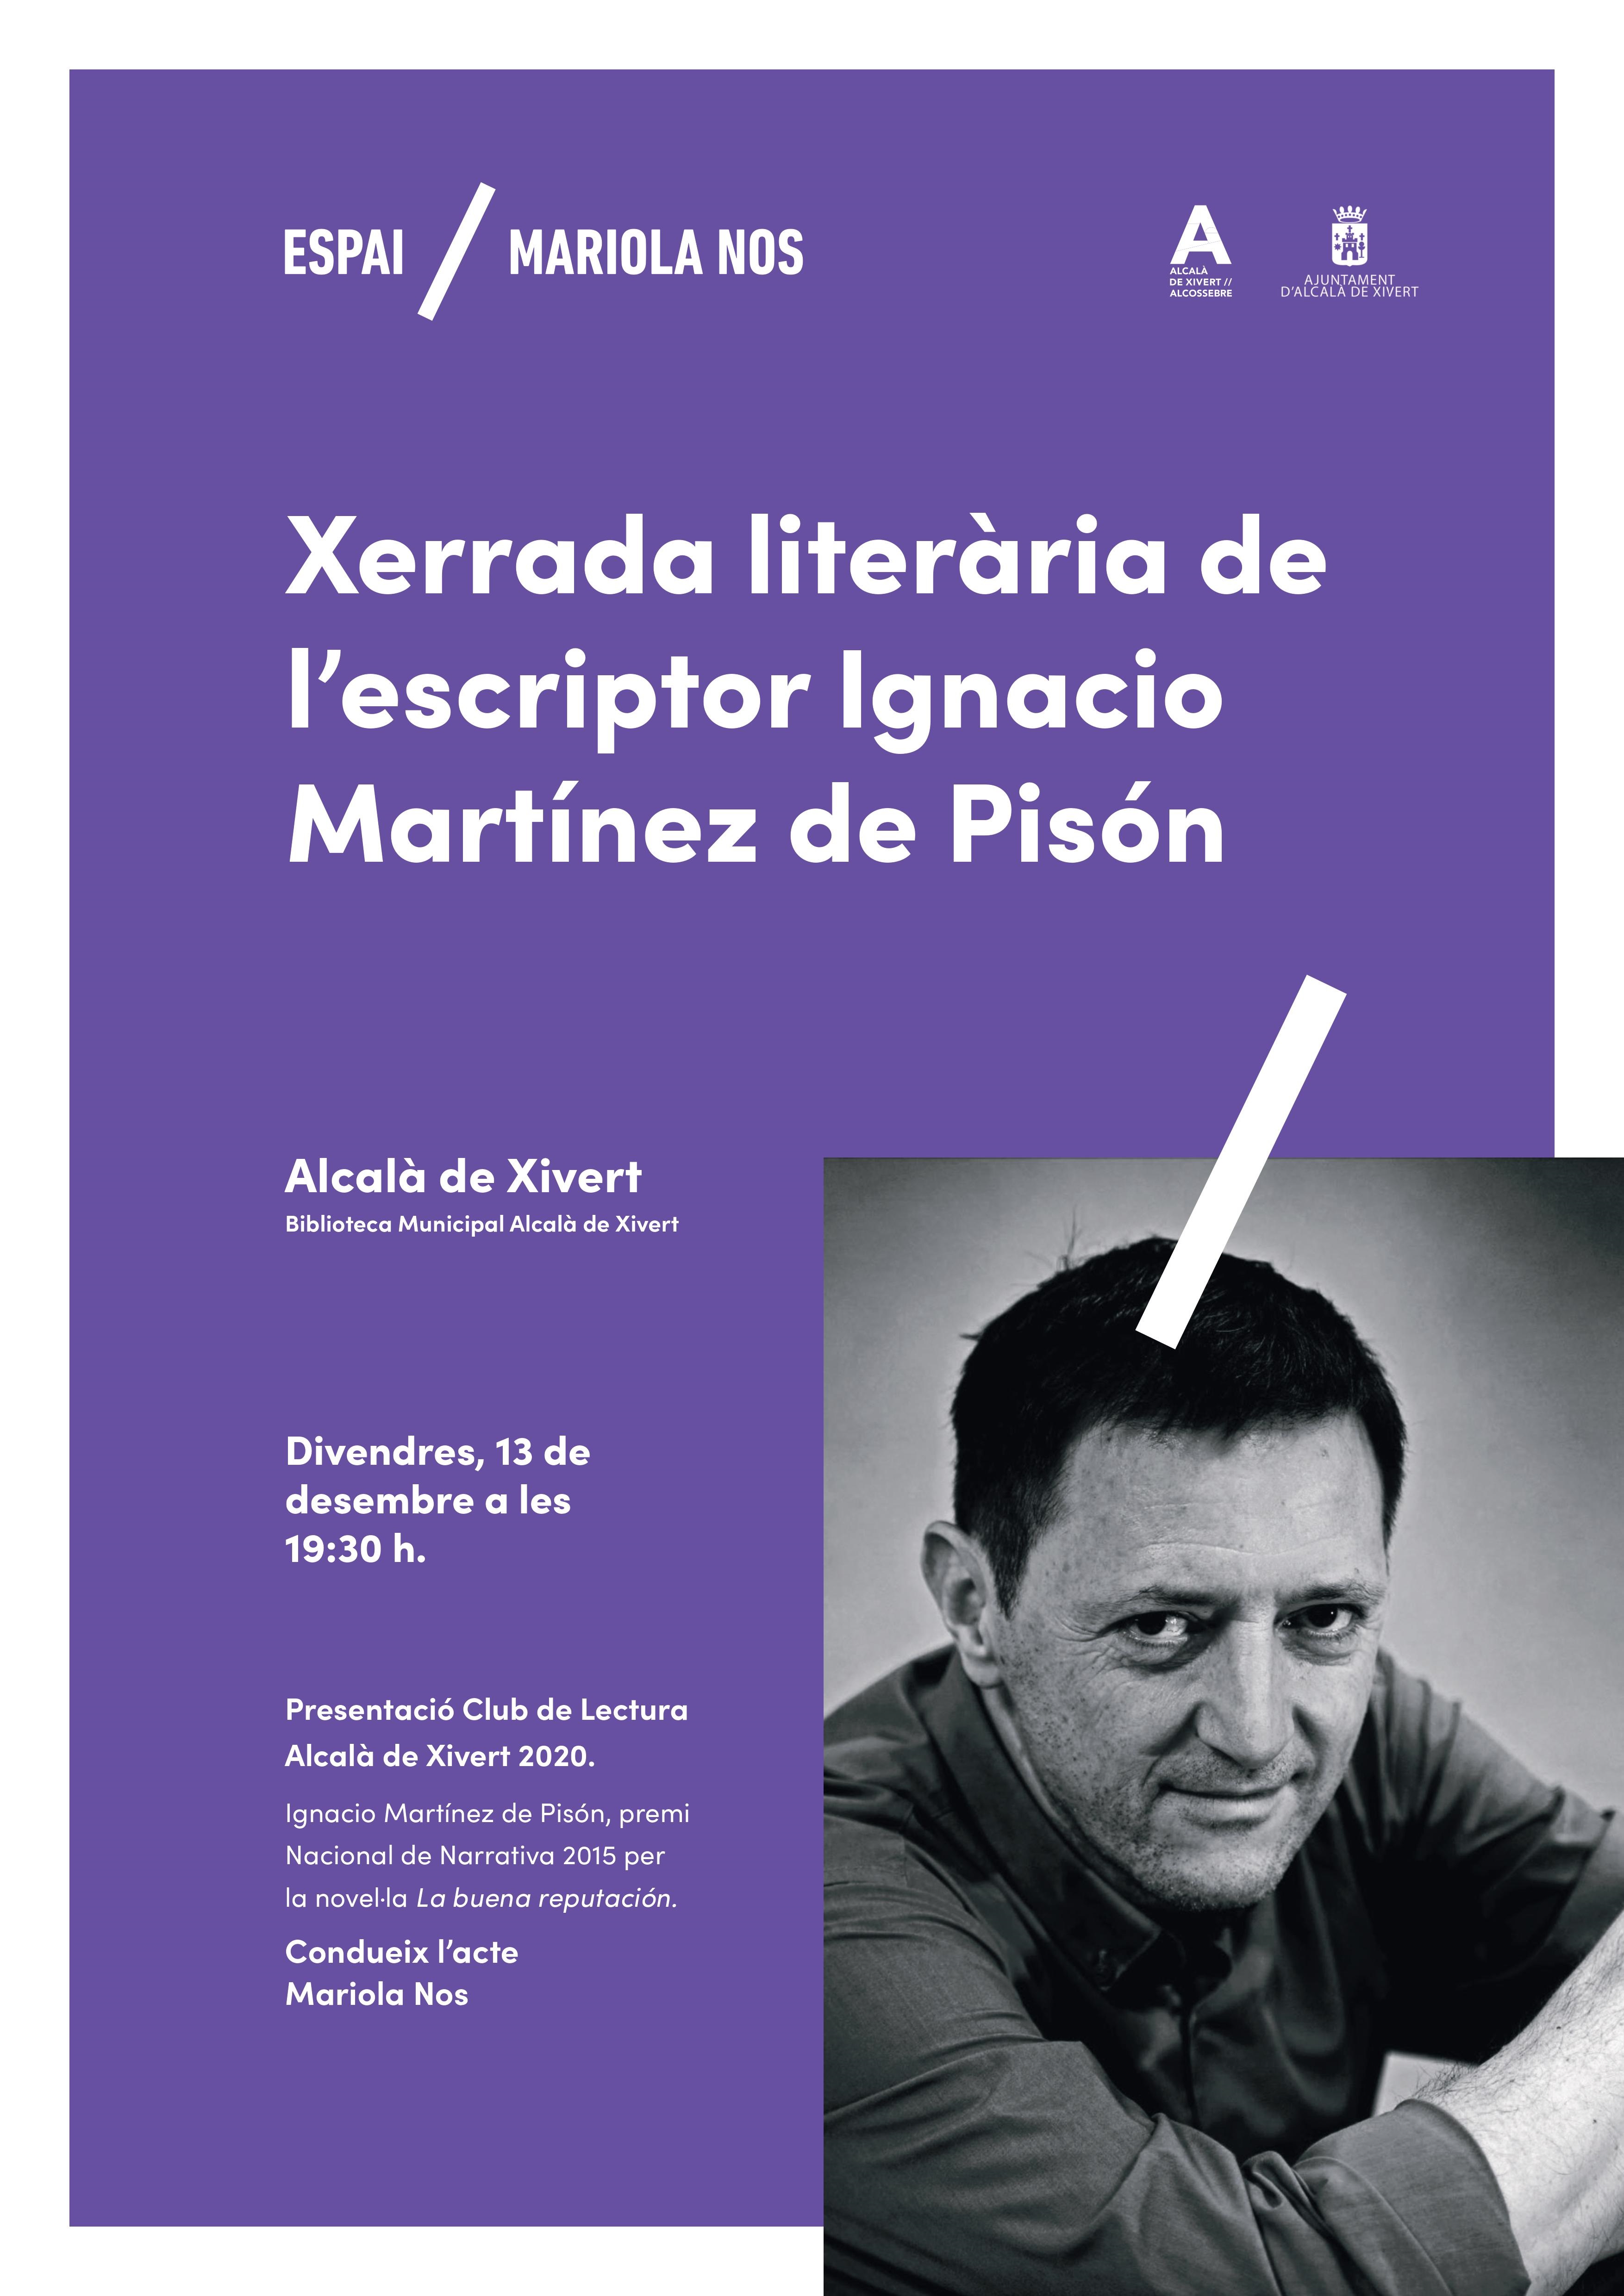 Alcalà-Alcossebre; L'Ajuntament d'Alcalà-Alcossebre posa en marxa un Club de Lectura que començarà amb una xerrada de l'escriptor Ignacio Martínez de Pisón el proper 13 de desembre